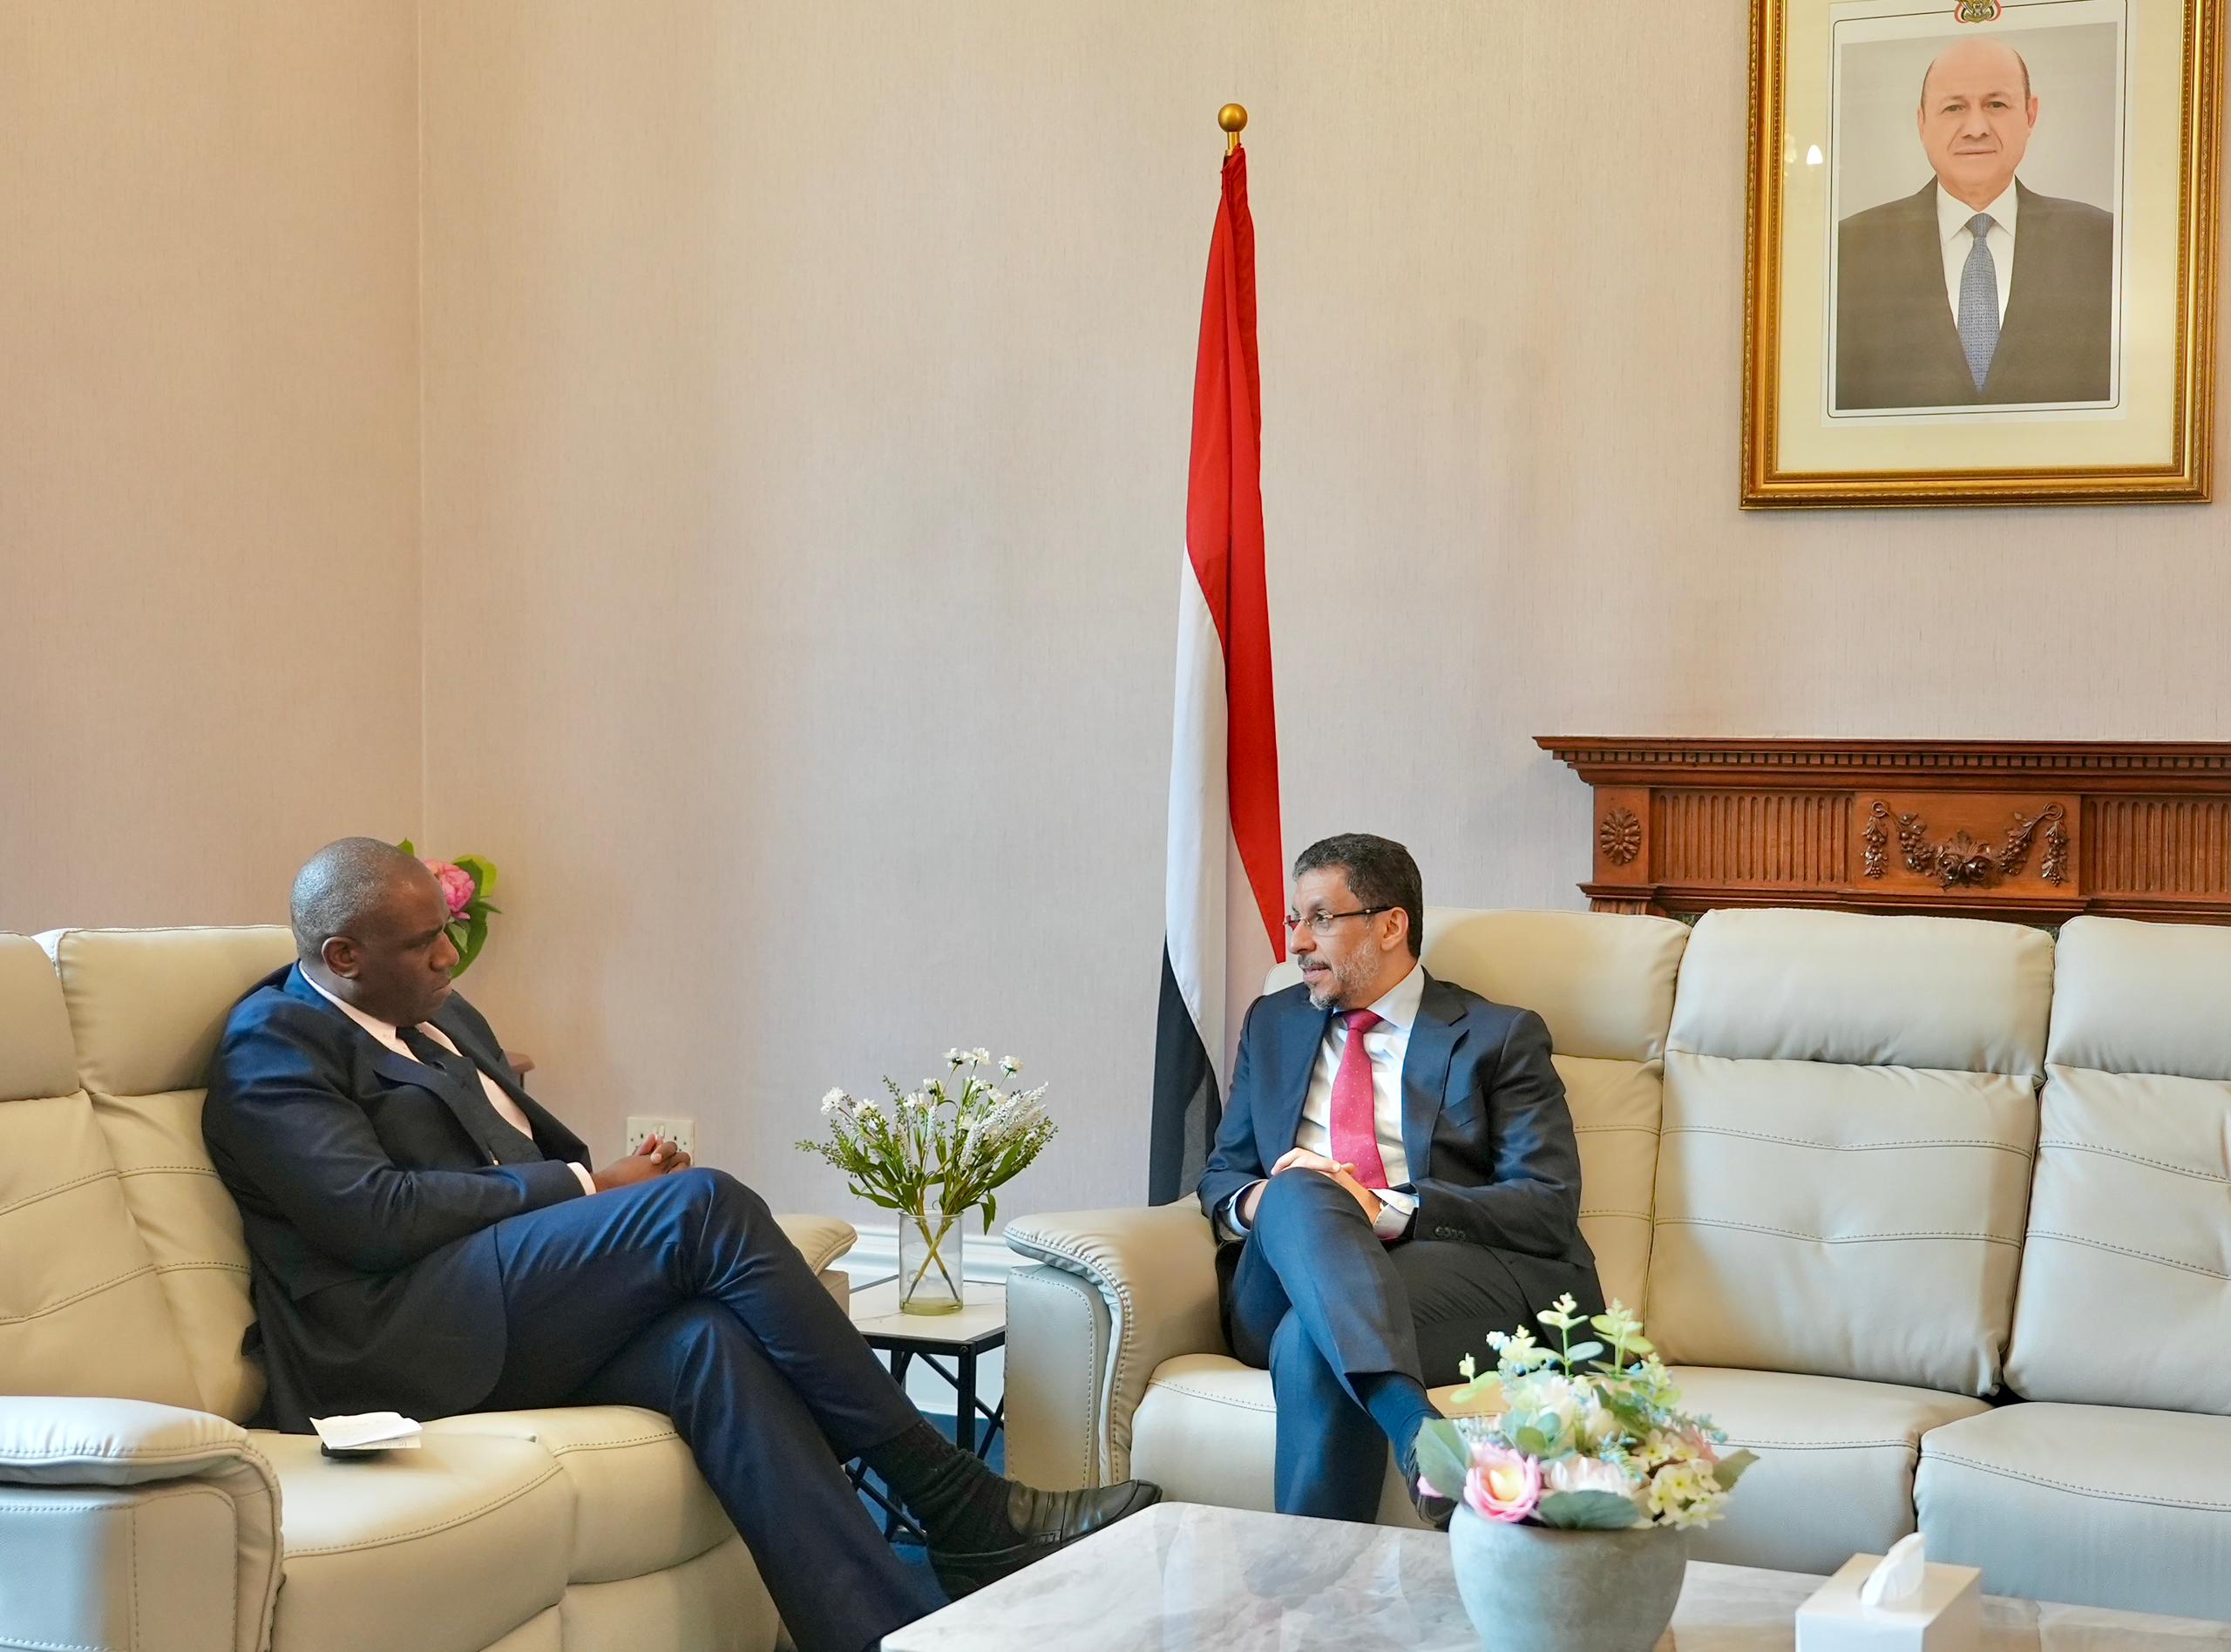 رئيس الوزراء يناقش مع وزير الخارجية في حكومة الظل بحزب العمال البريطاني التطورات في اليمن